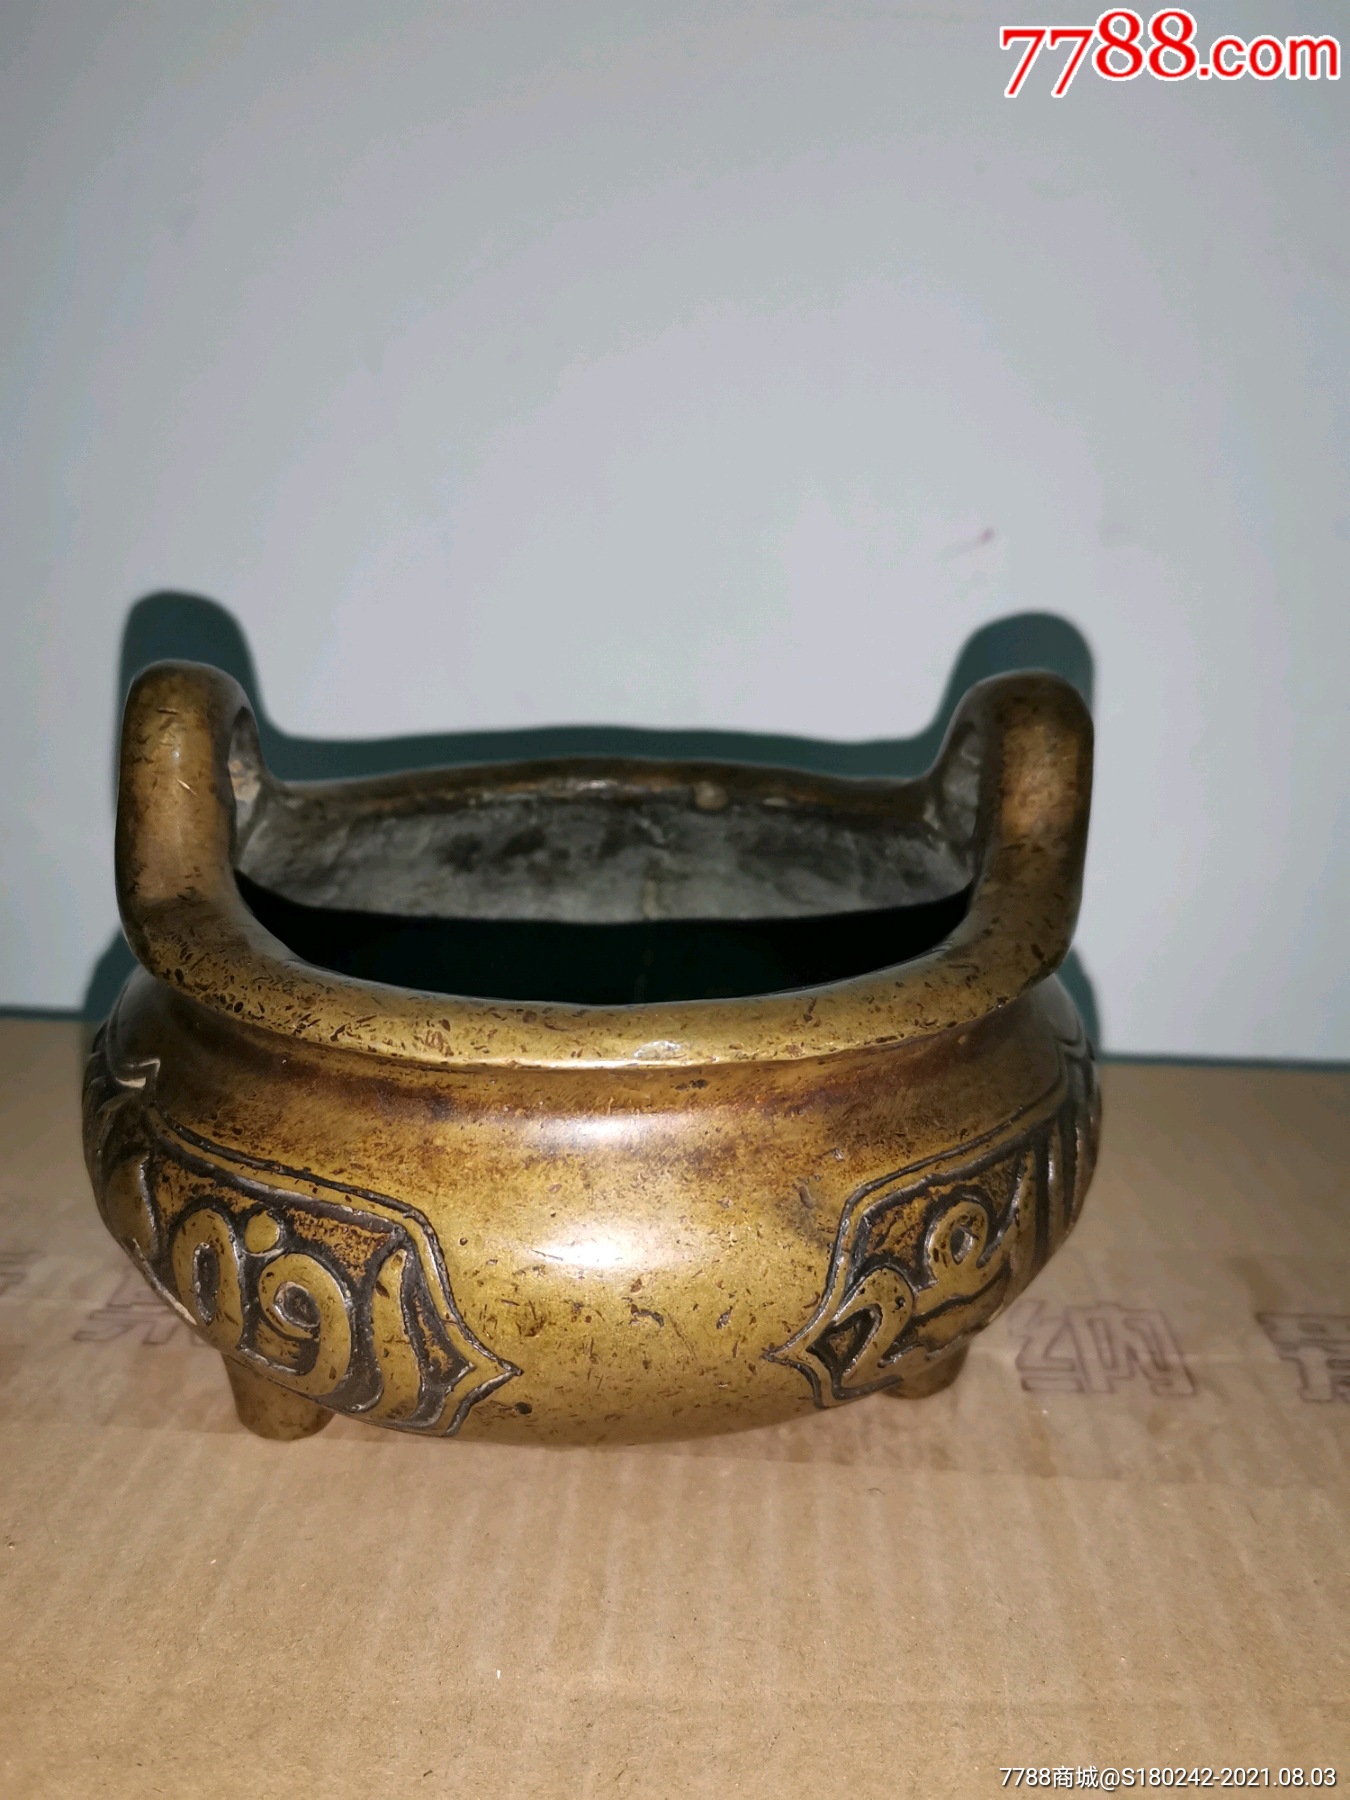 明代老铜香炉古玩收藏摆件古董老物件-价格:550.0000